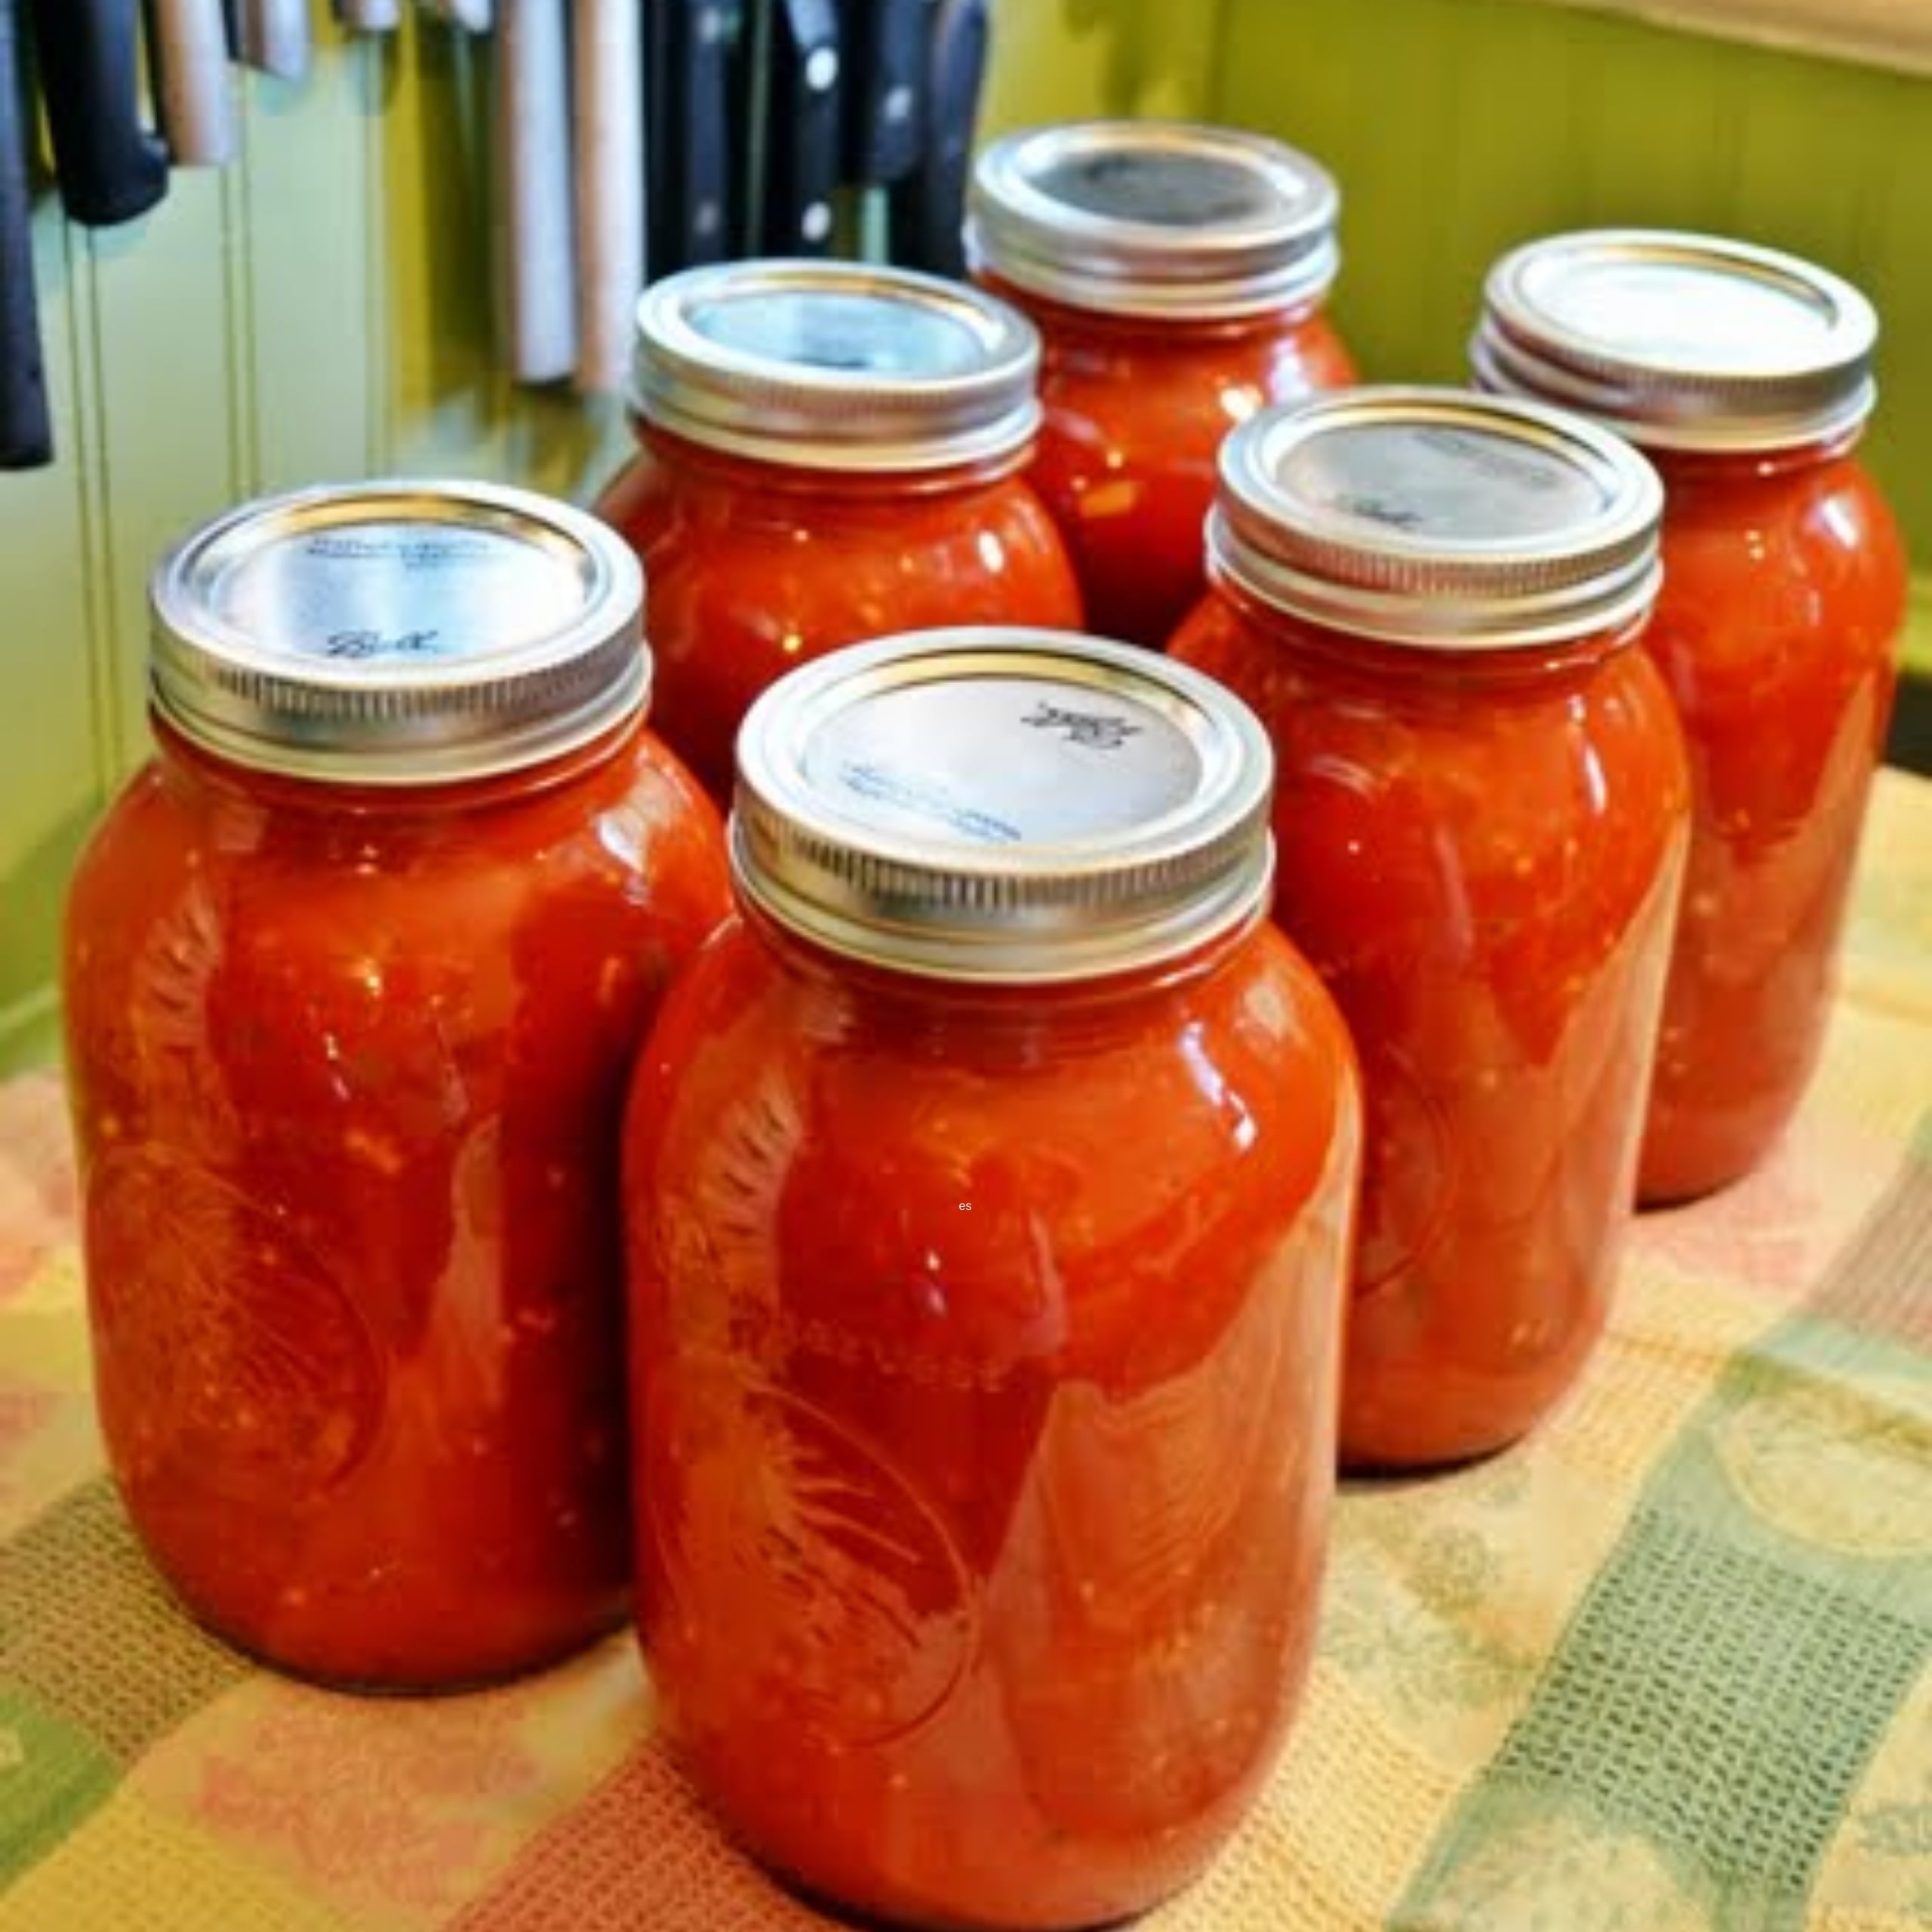 https://cottageatthecrossroads.com/wp-content/uploads/2022/05/Homemade-Spaghetti-Sauce-featured-1.jpg